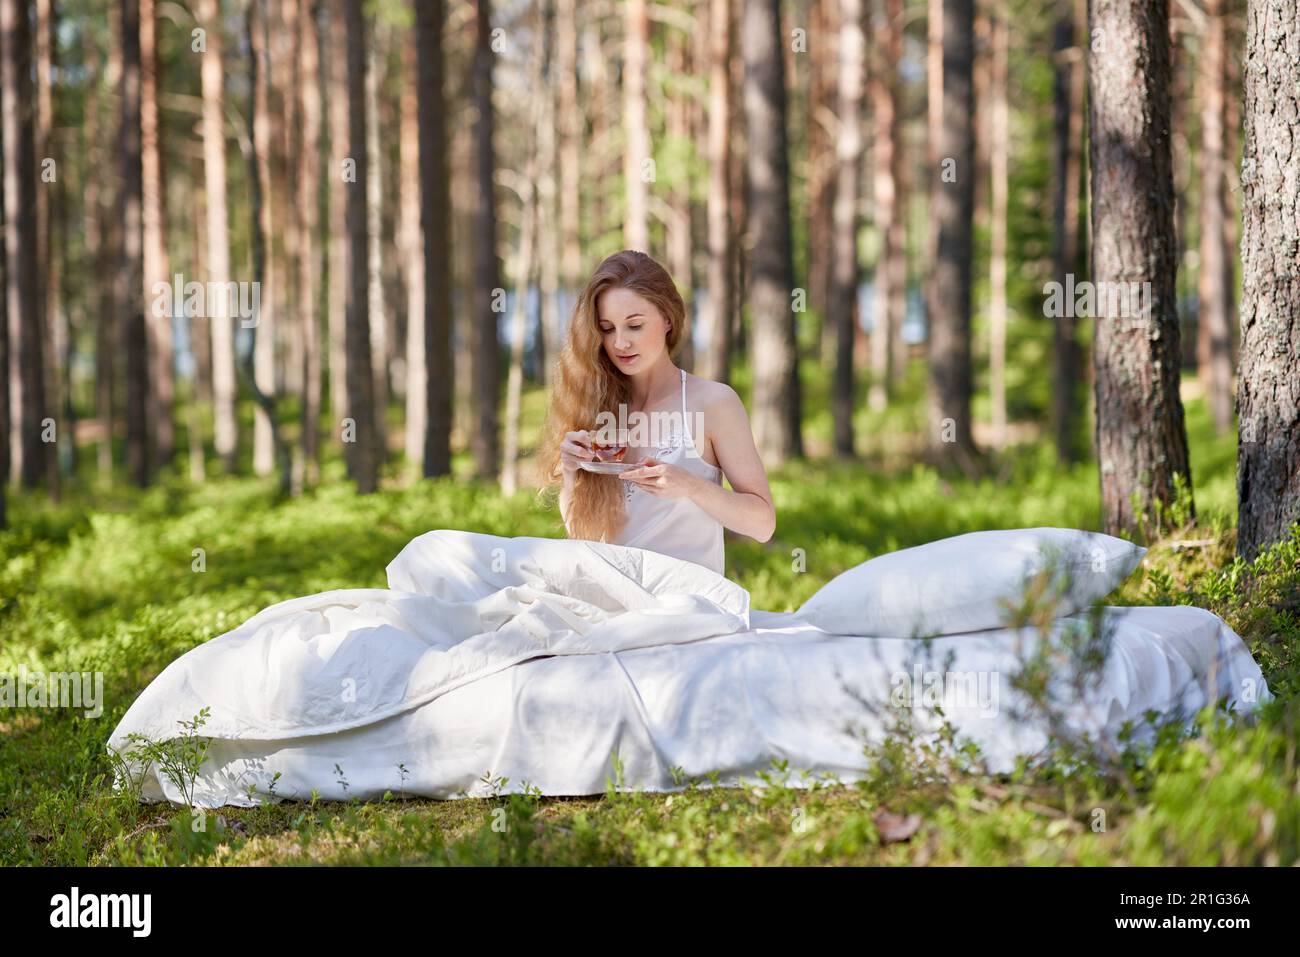 La donna si sveglia in una foresta estiva. Una ragazza beve il tè del mattino seduto su un materasso nel bosco Foto Stock